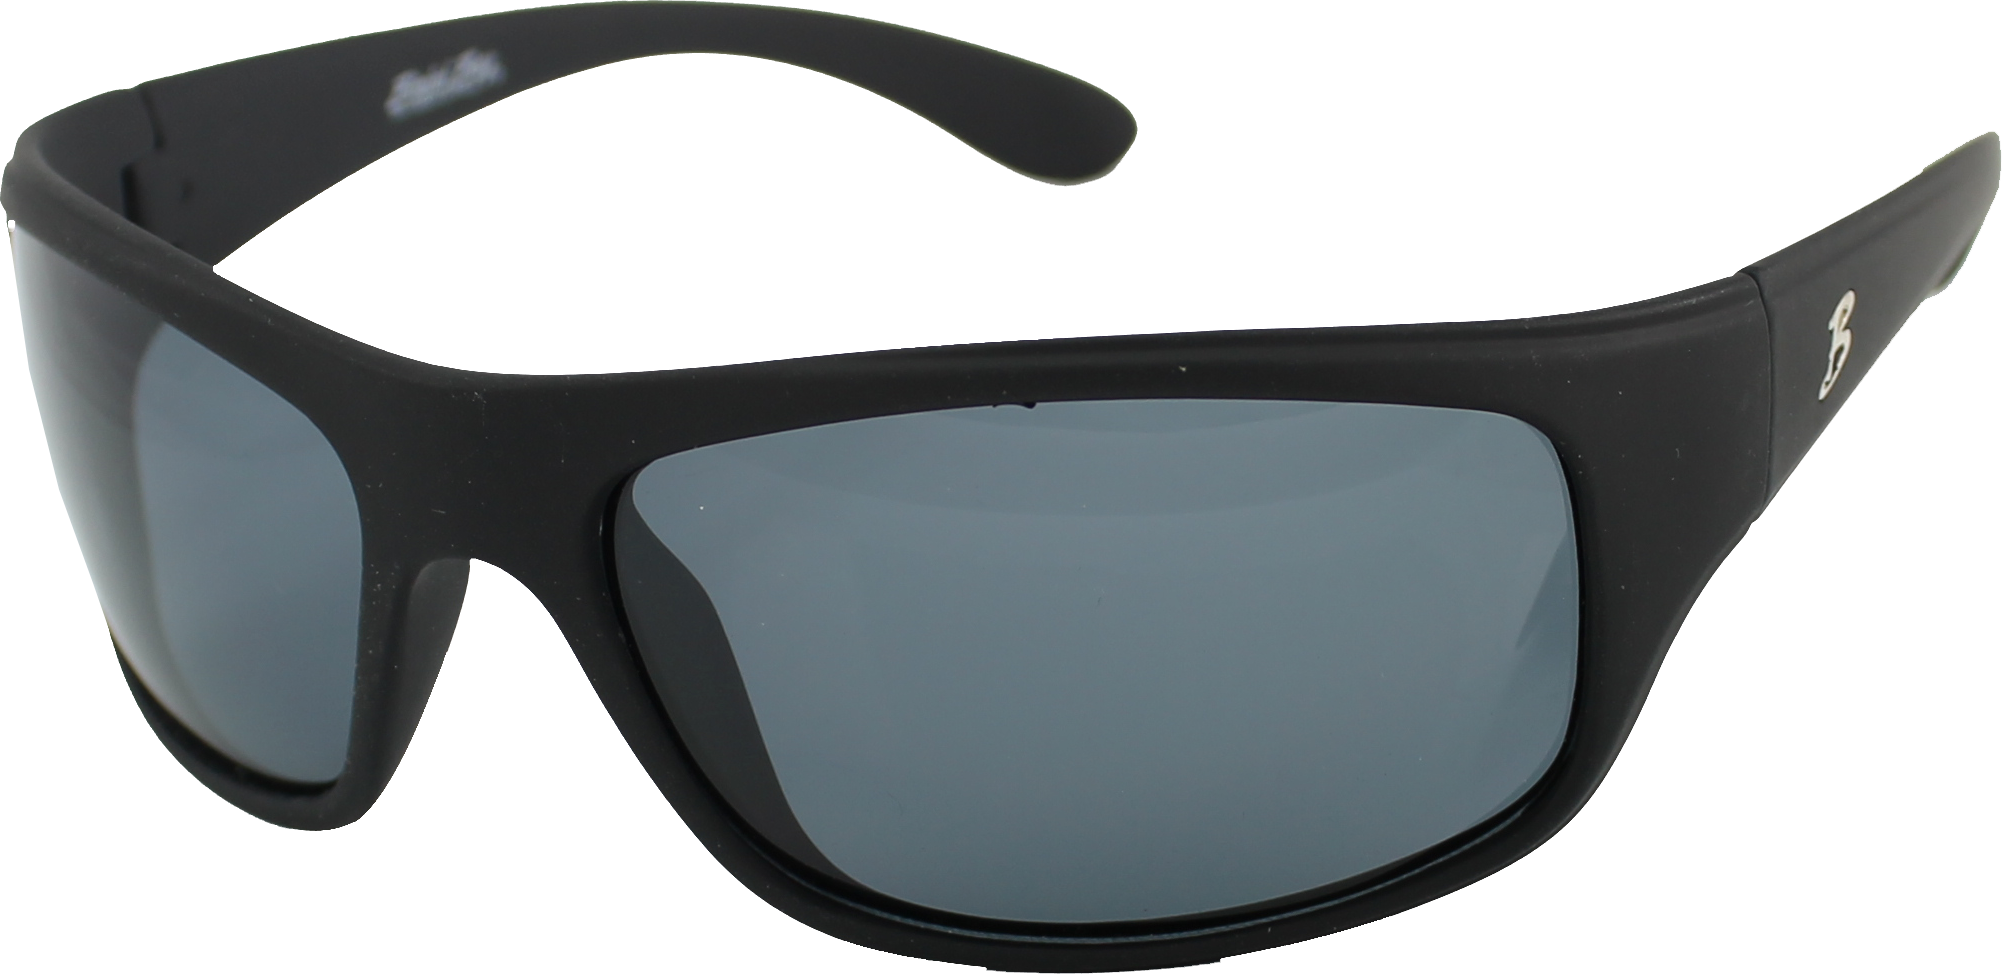 Bimini Bay Polarized Sunglasses MB-BB3S-MFB Smoke